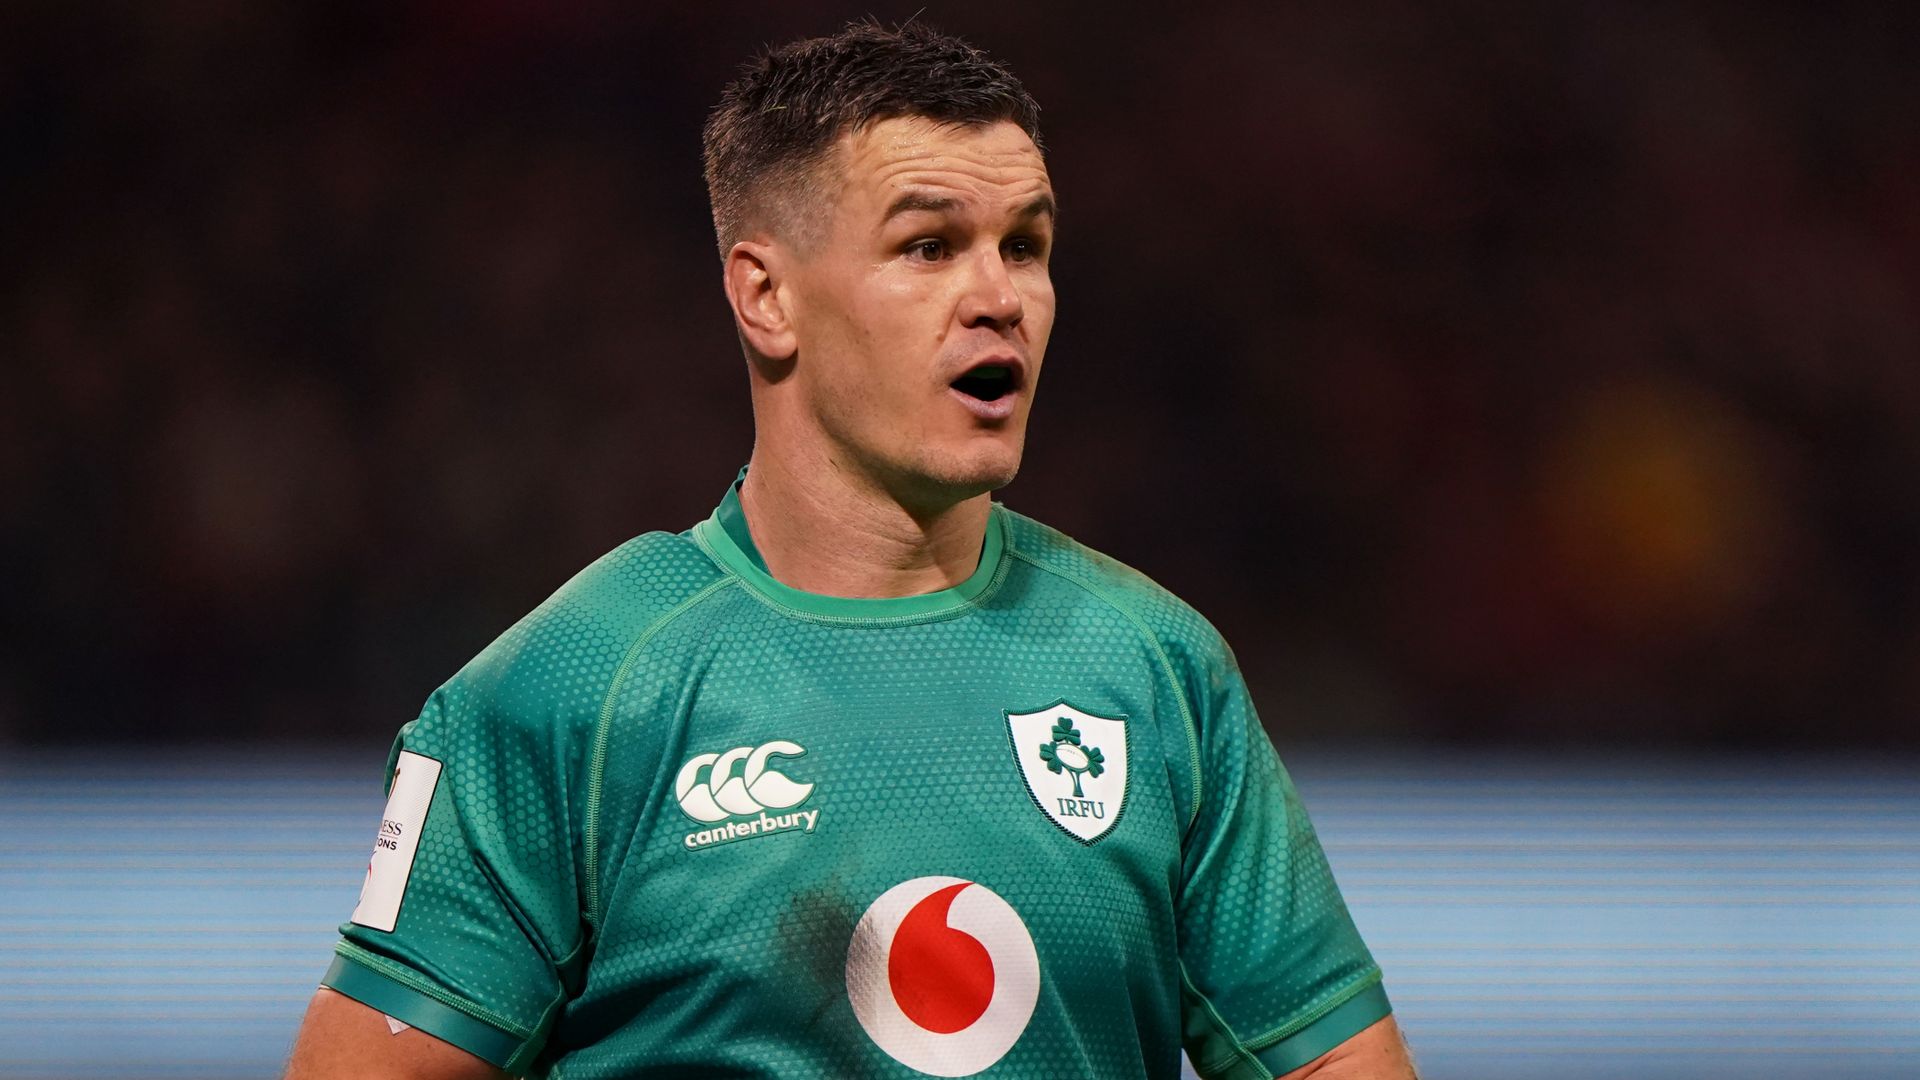 Ireland coach Farrell: No concerns over Sexton's age